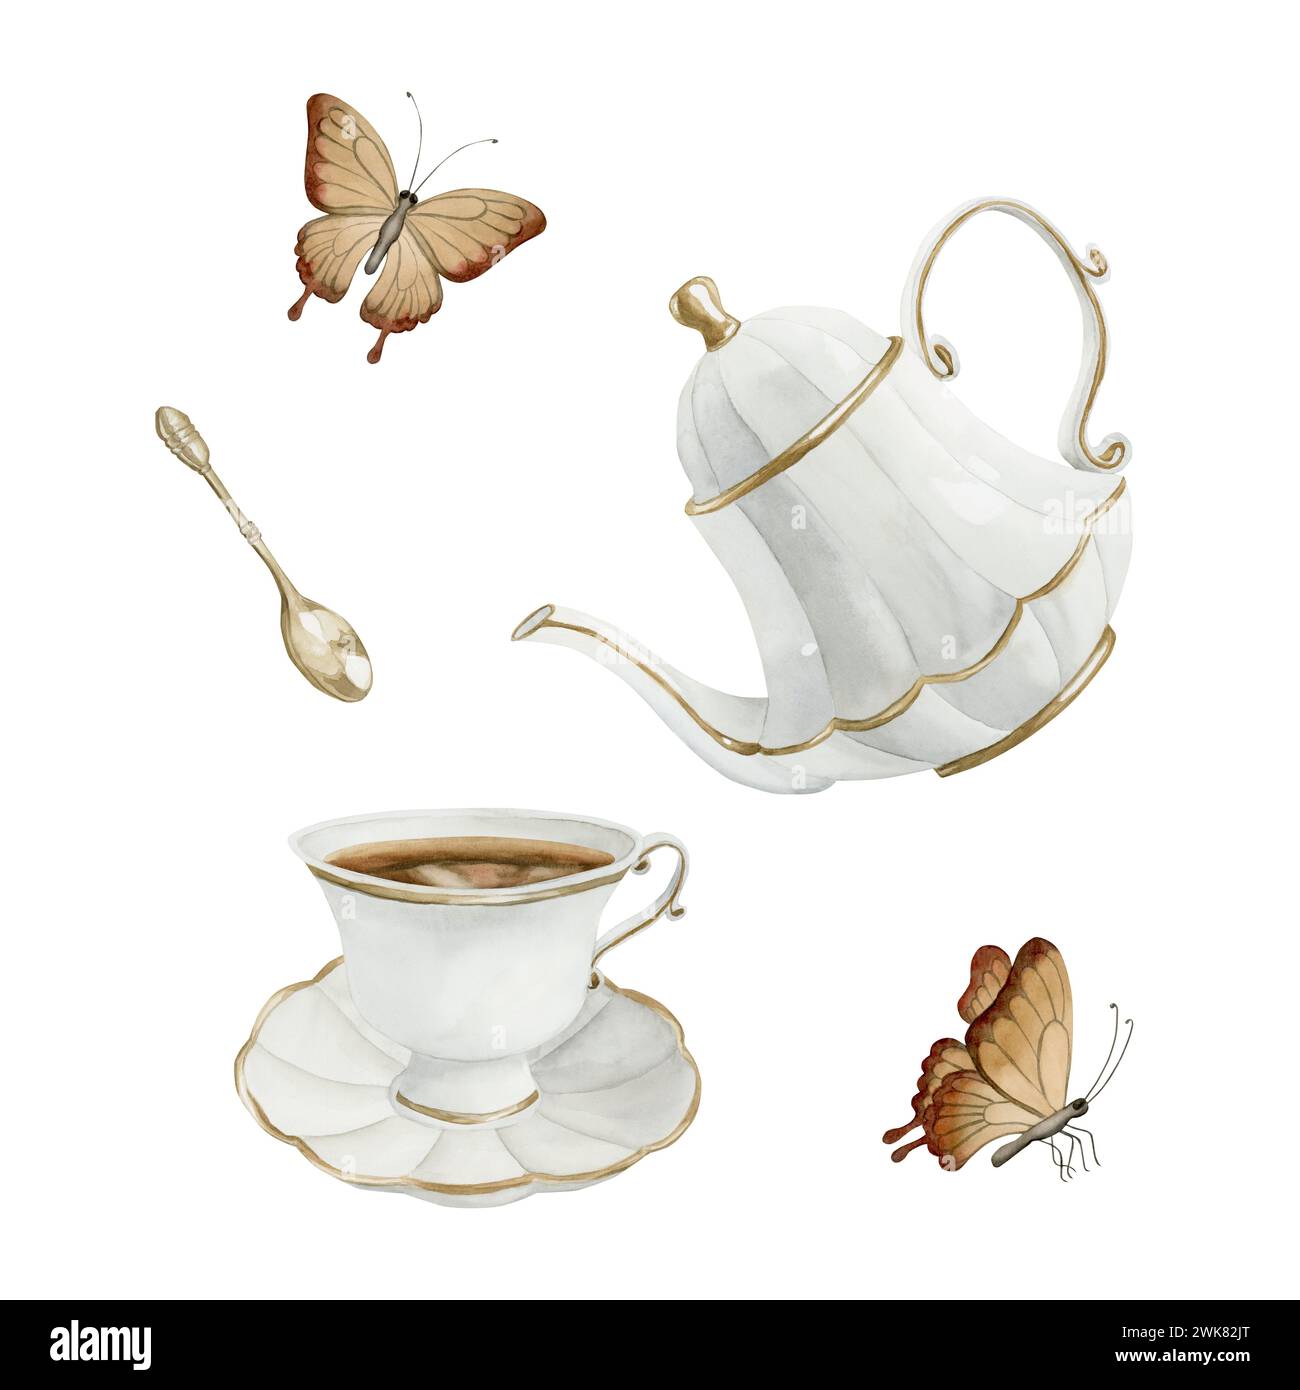 Composizione di teiera in porcellana bianca, tazza da tè e piattino con bordo dorato, cucchiaio da tè in metallo dorato e farfalle. Stile vittoriano. Illustrazione acquerello Foto Stock